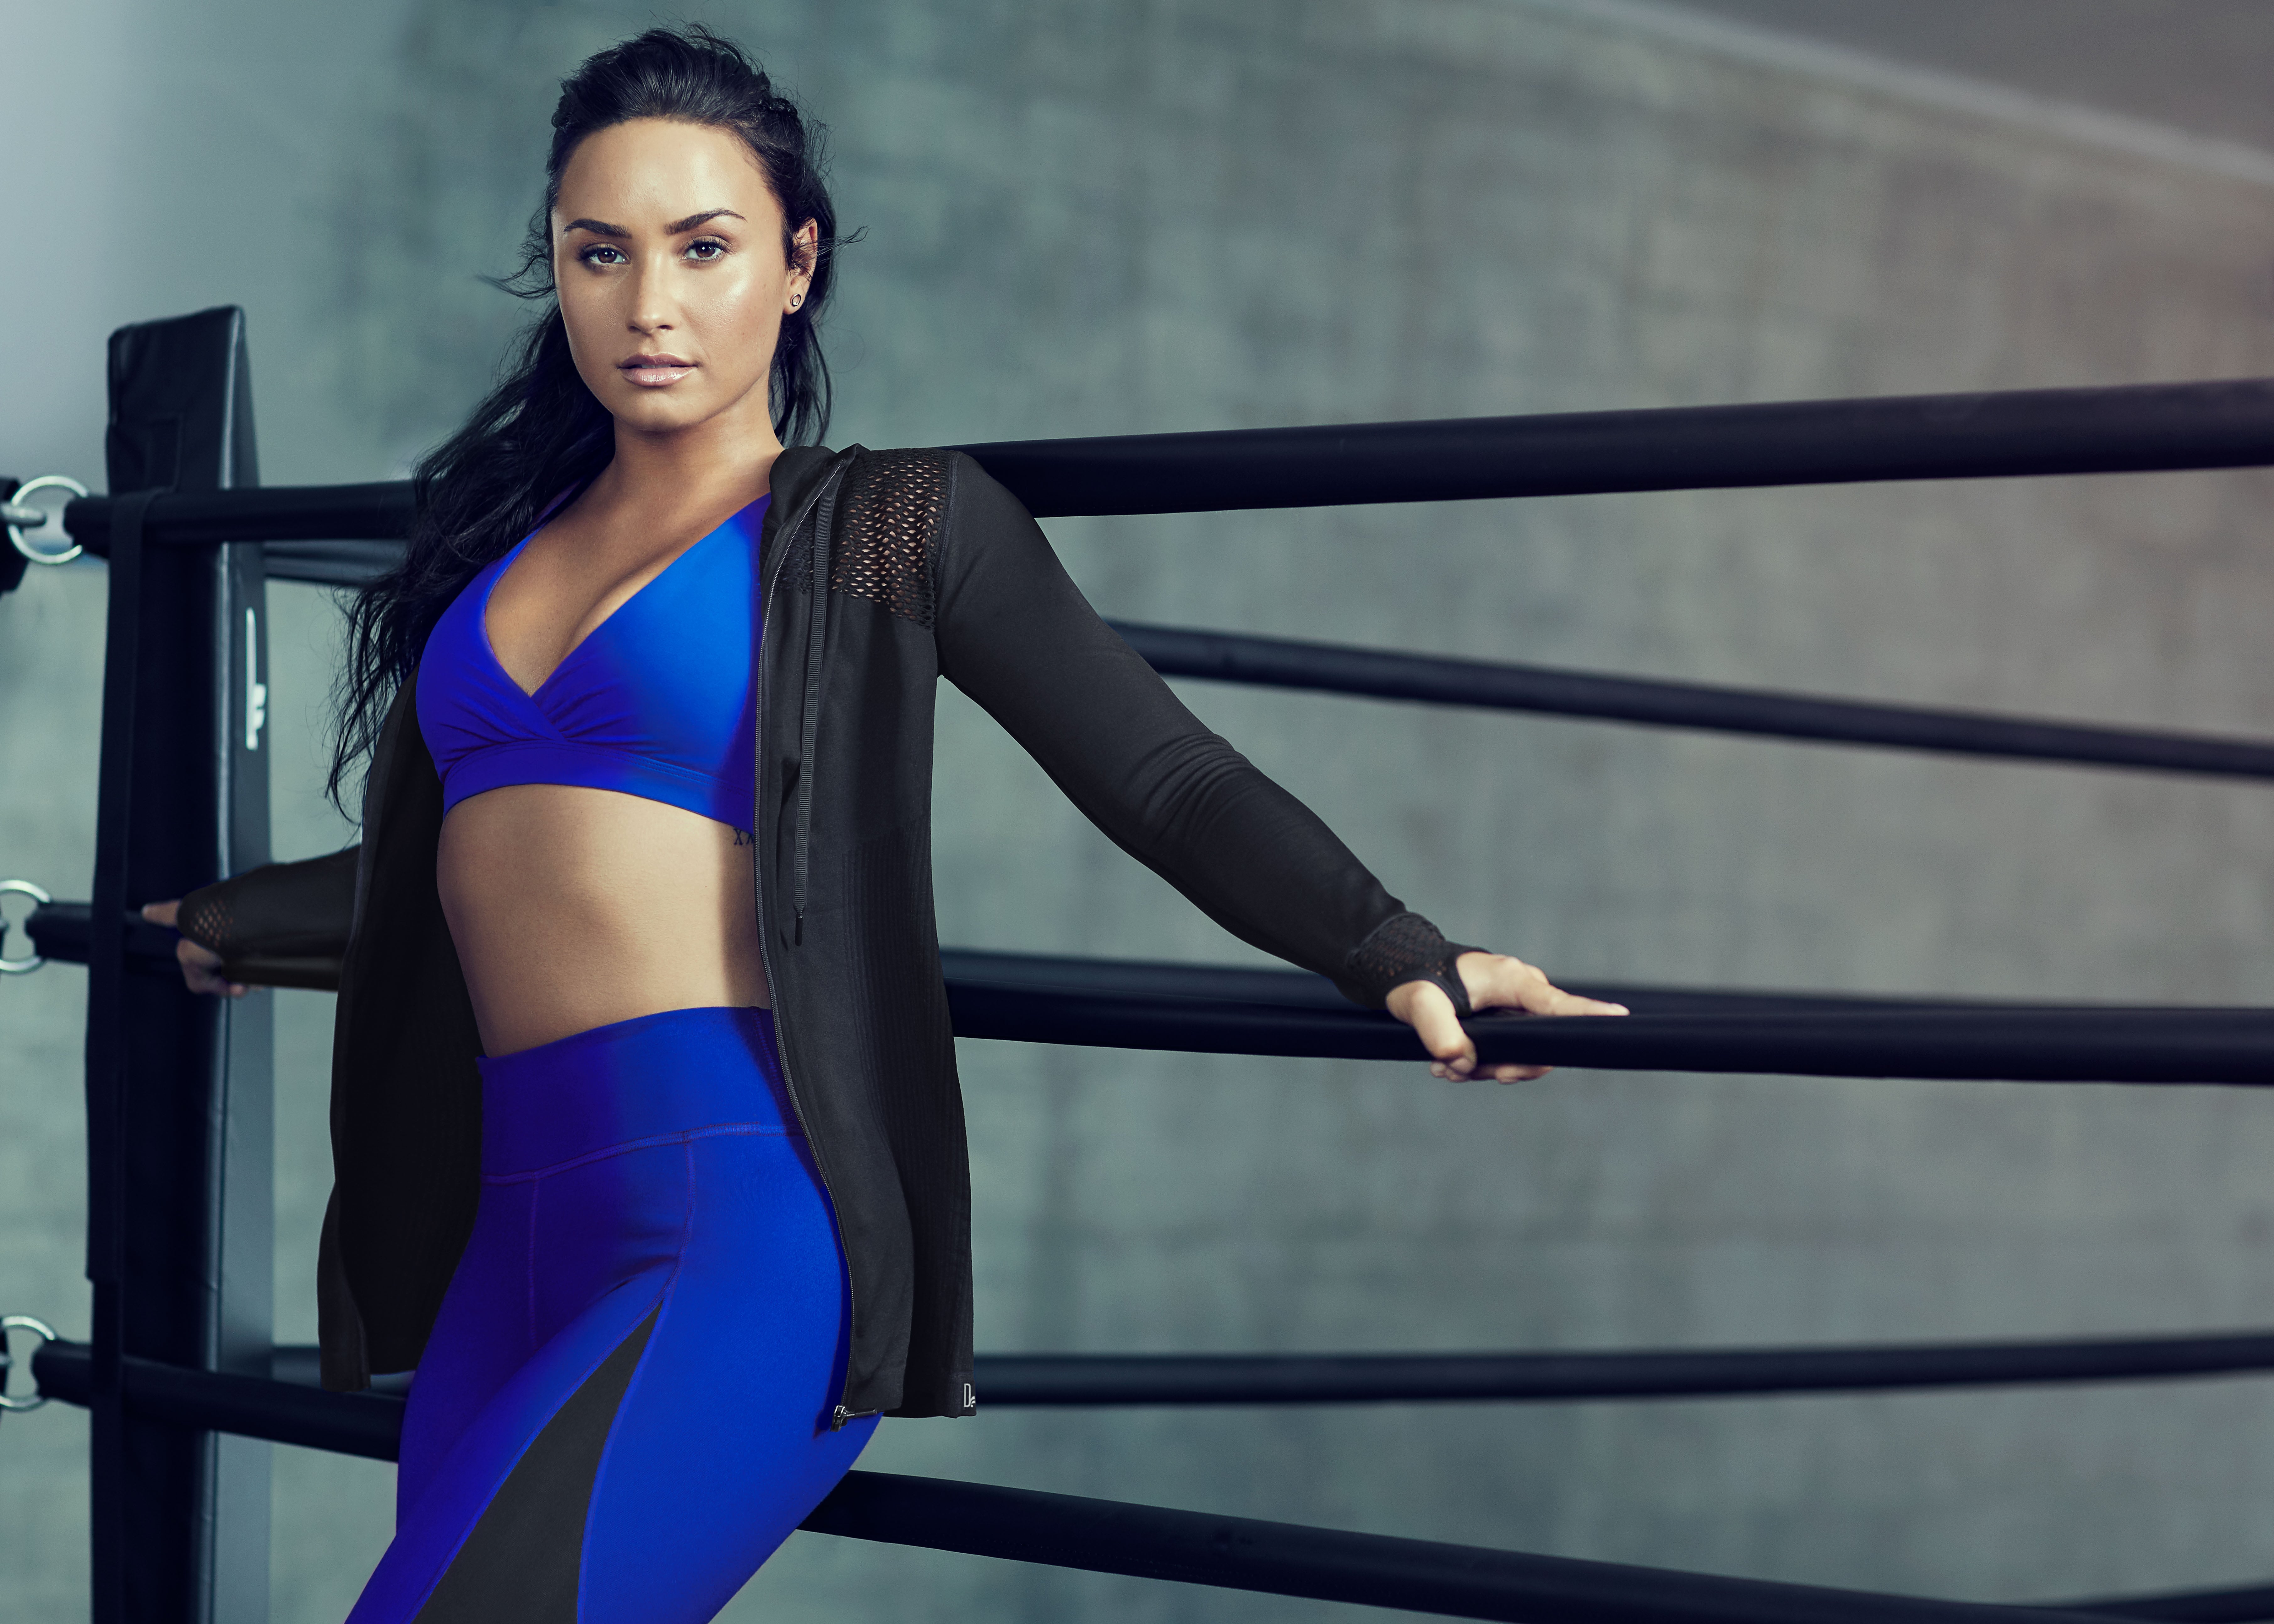 HUGE Fabletics Gym Clothes Haul & Review Ft. Demi Lovato Line